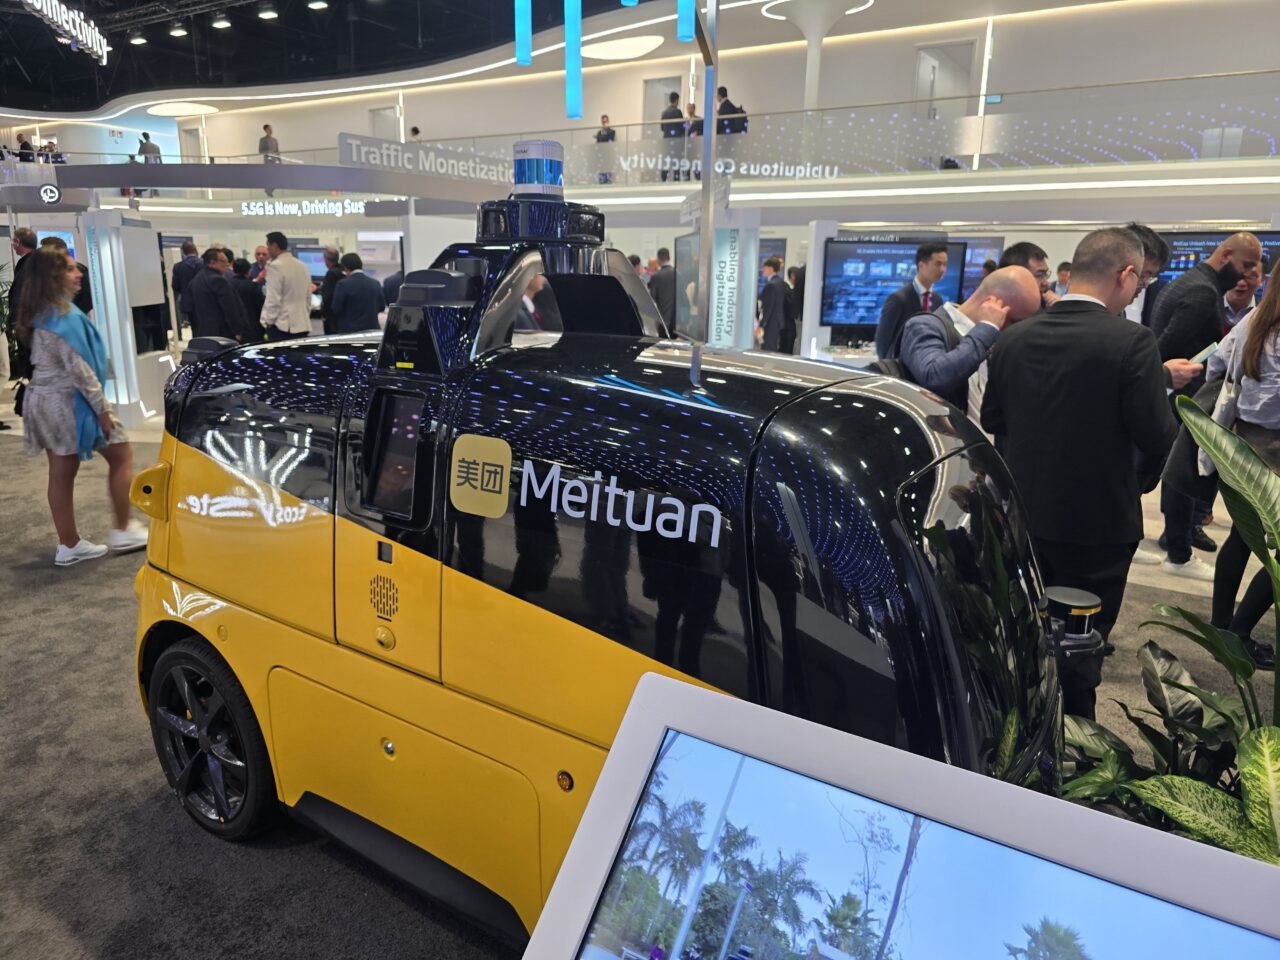 Samochód dostawczy Meituan na stoisku Huawei 5.5G na targach MWC 2024 z technologią autonomiczną na tle wystawy technologicznej, z ludźmi w tle rozmyślającymi o prezentowanych produktach.